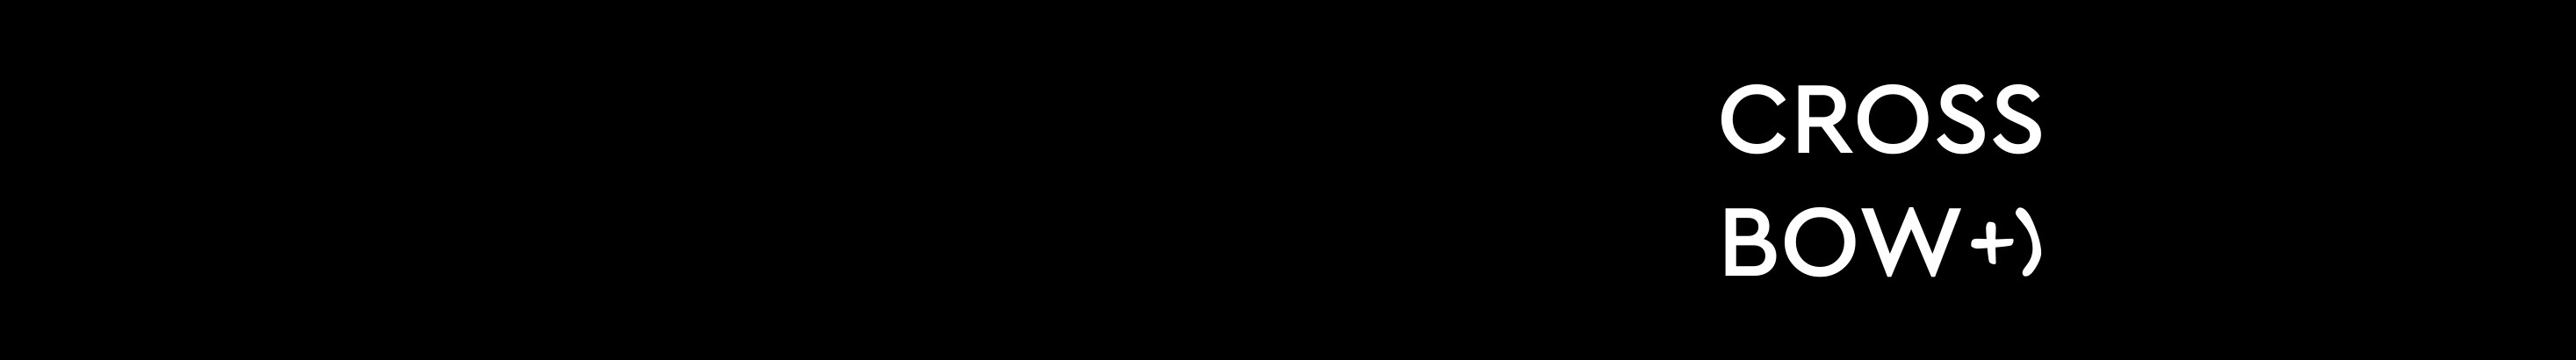 Banner de perfil de crossbow branding & design